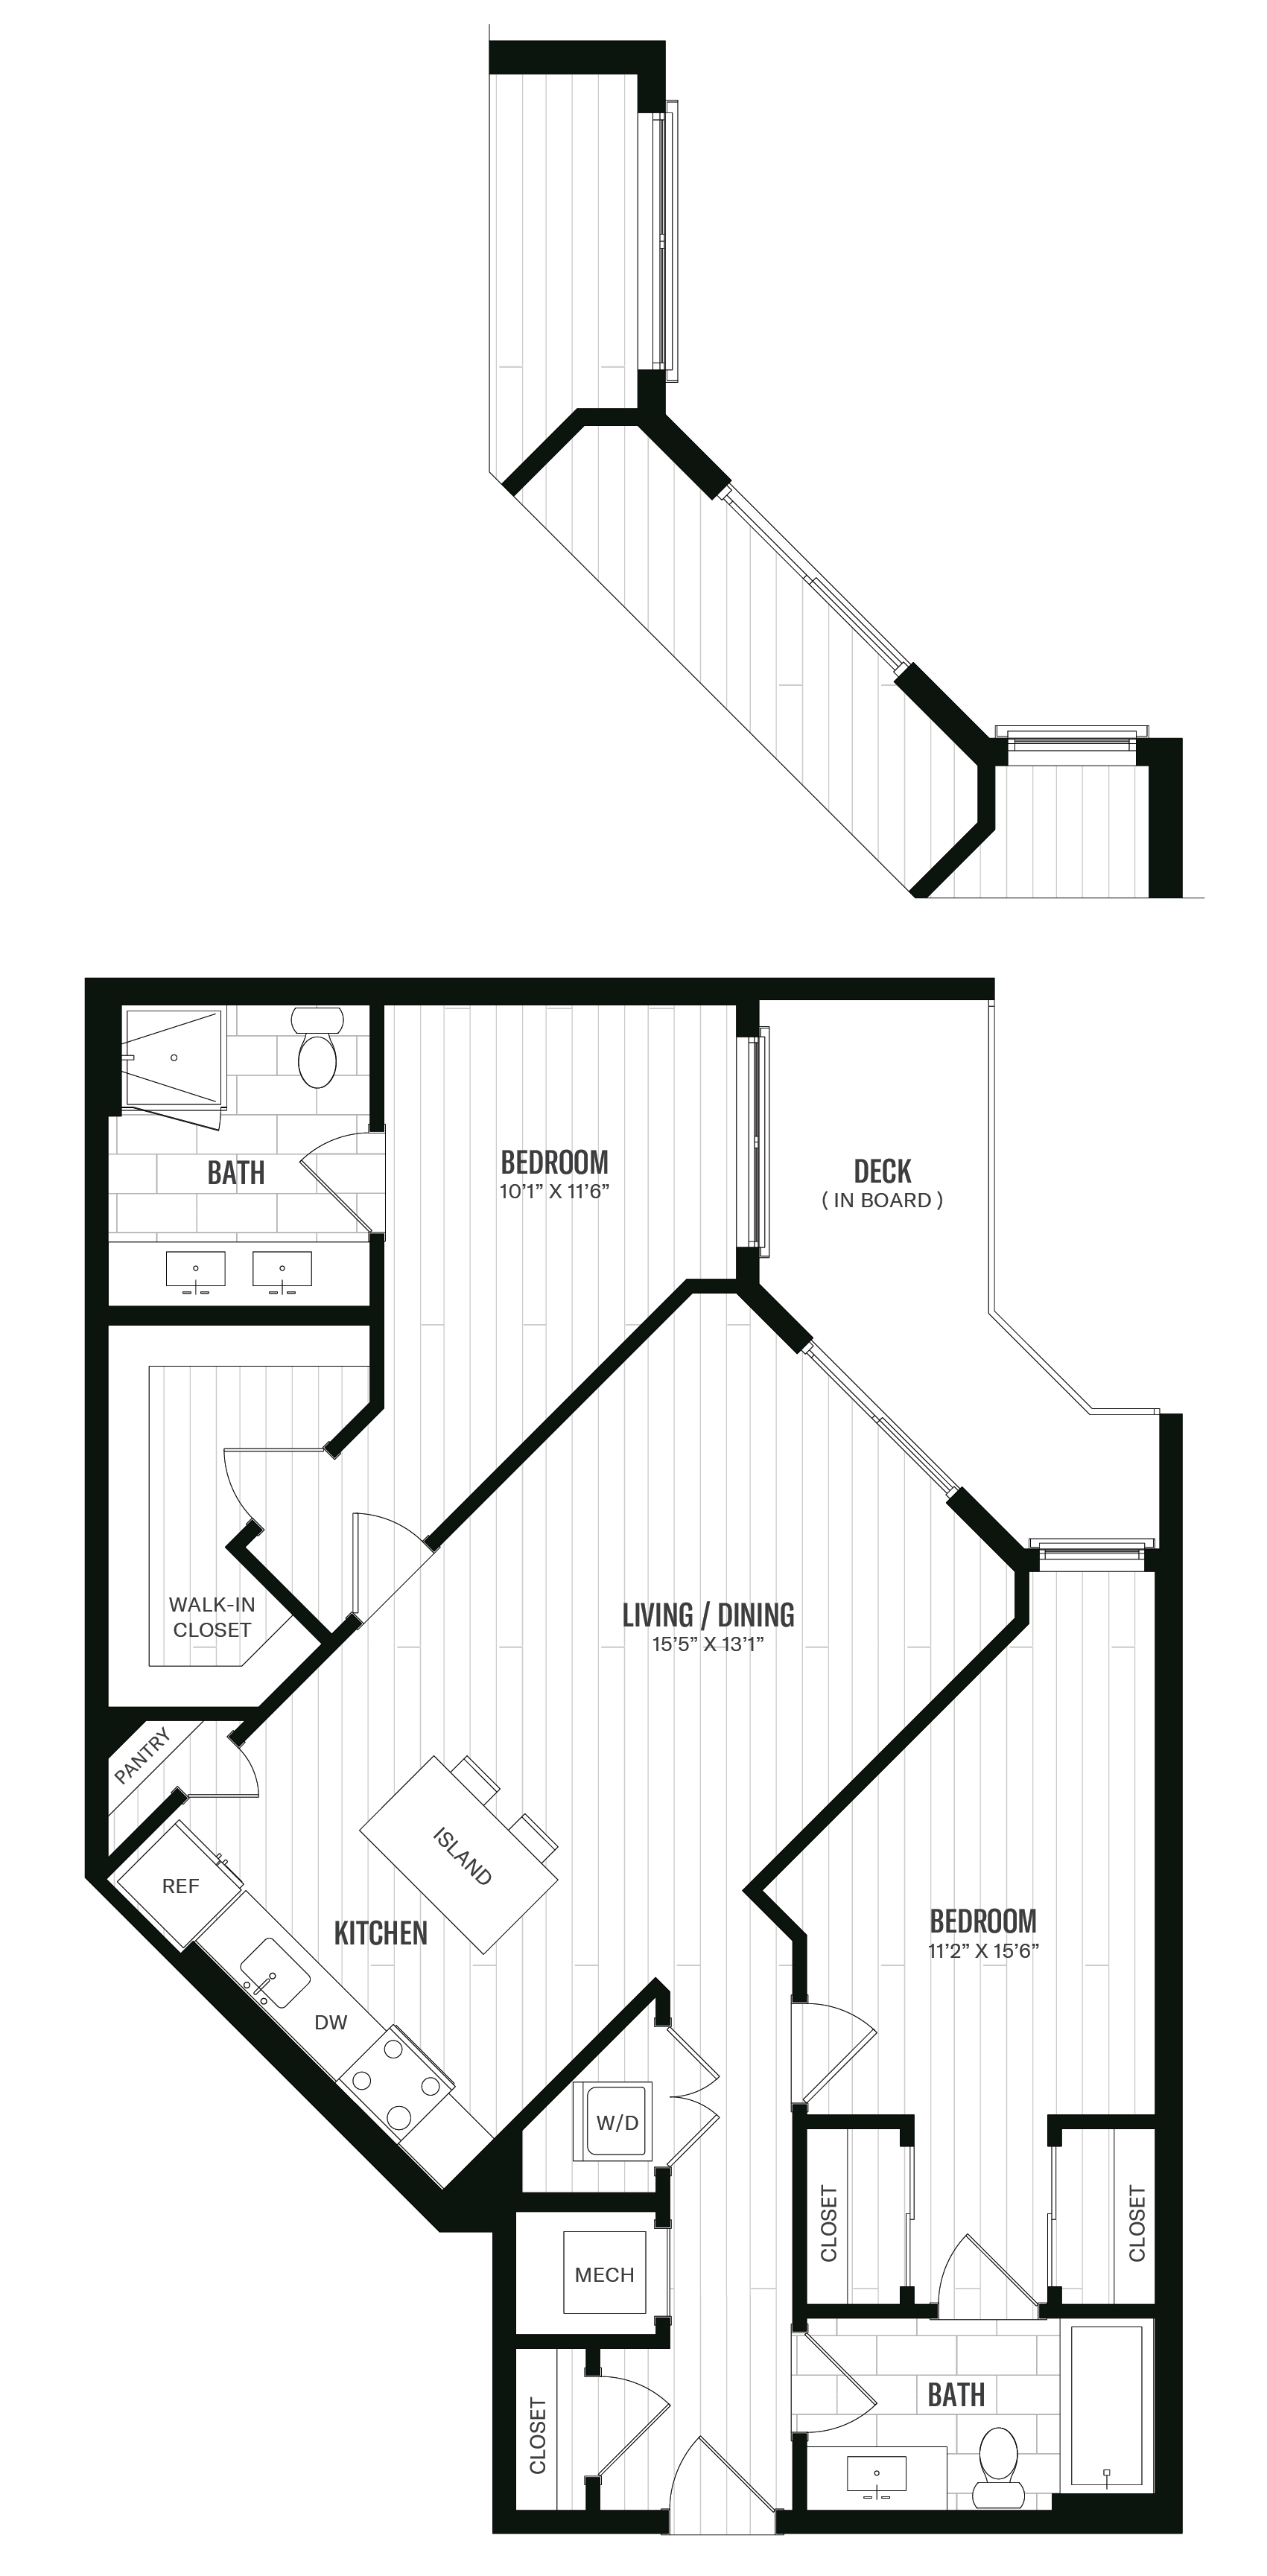 Floorplan image of unit 337